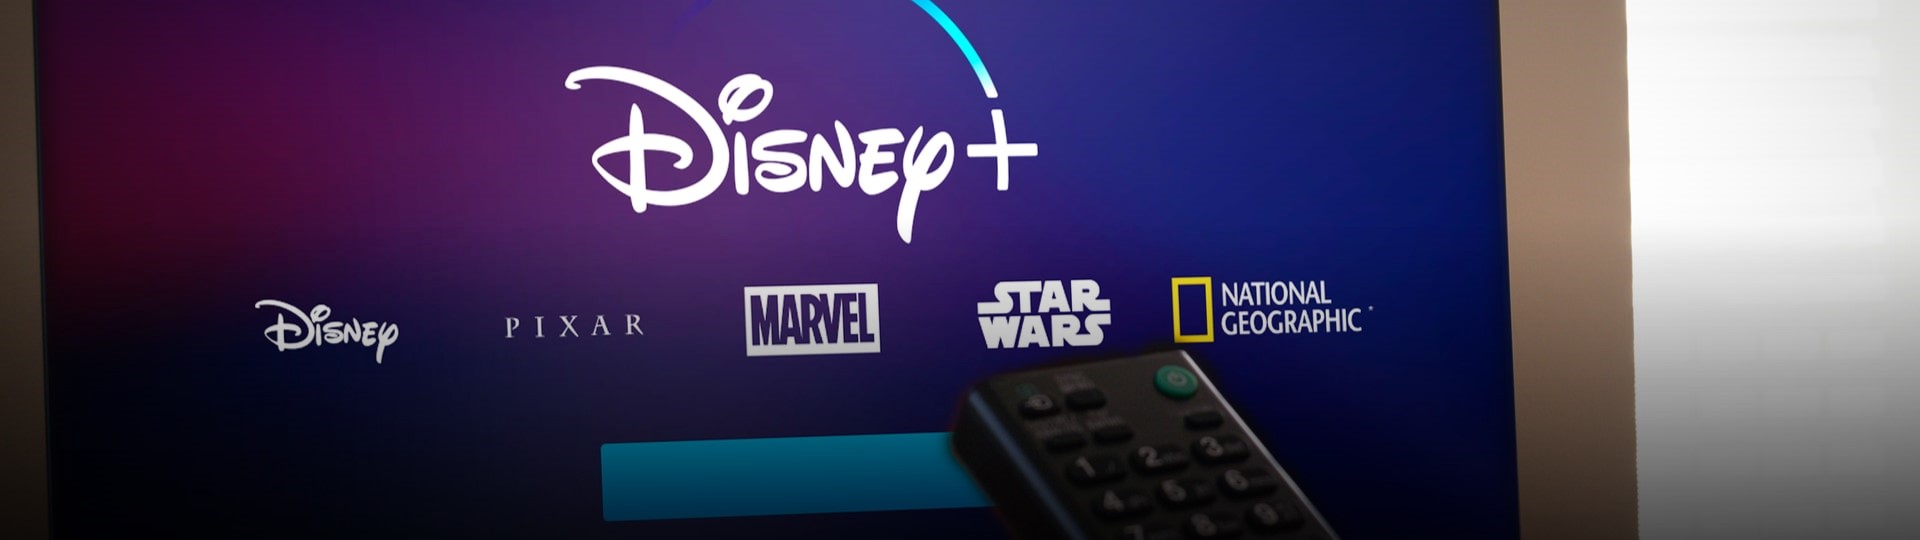 Walt Disney letos ukončí 100 ze svých mezinárodních televizních kanálů